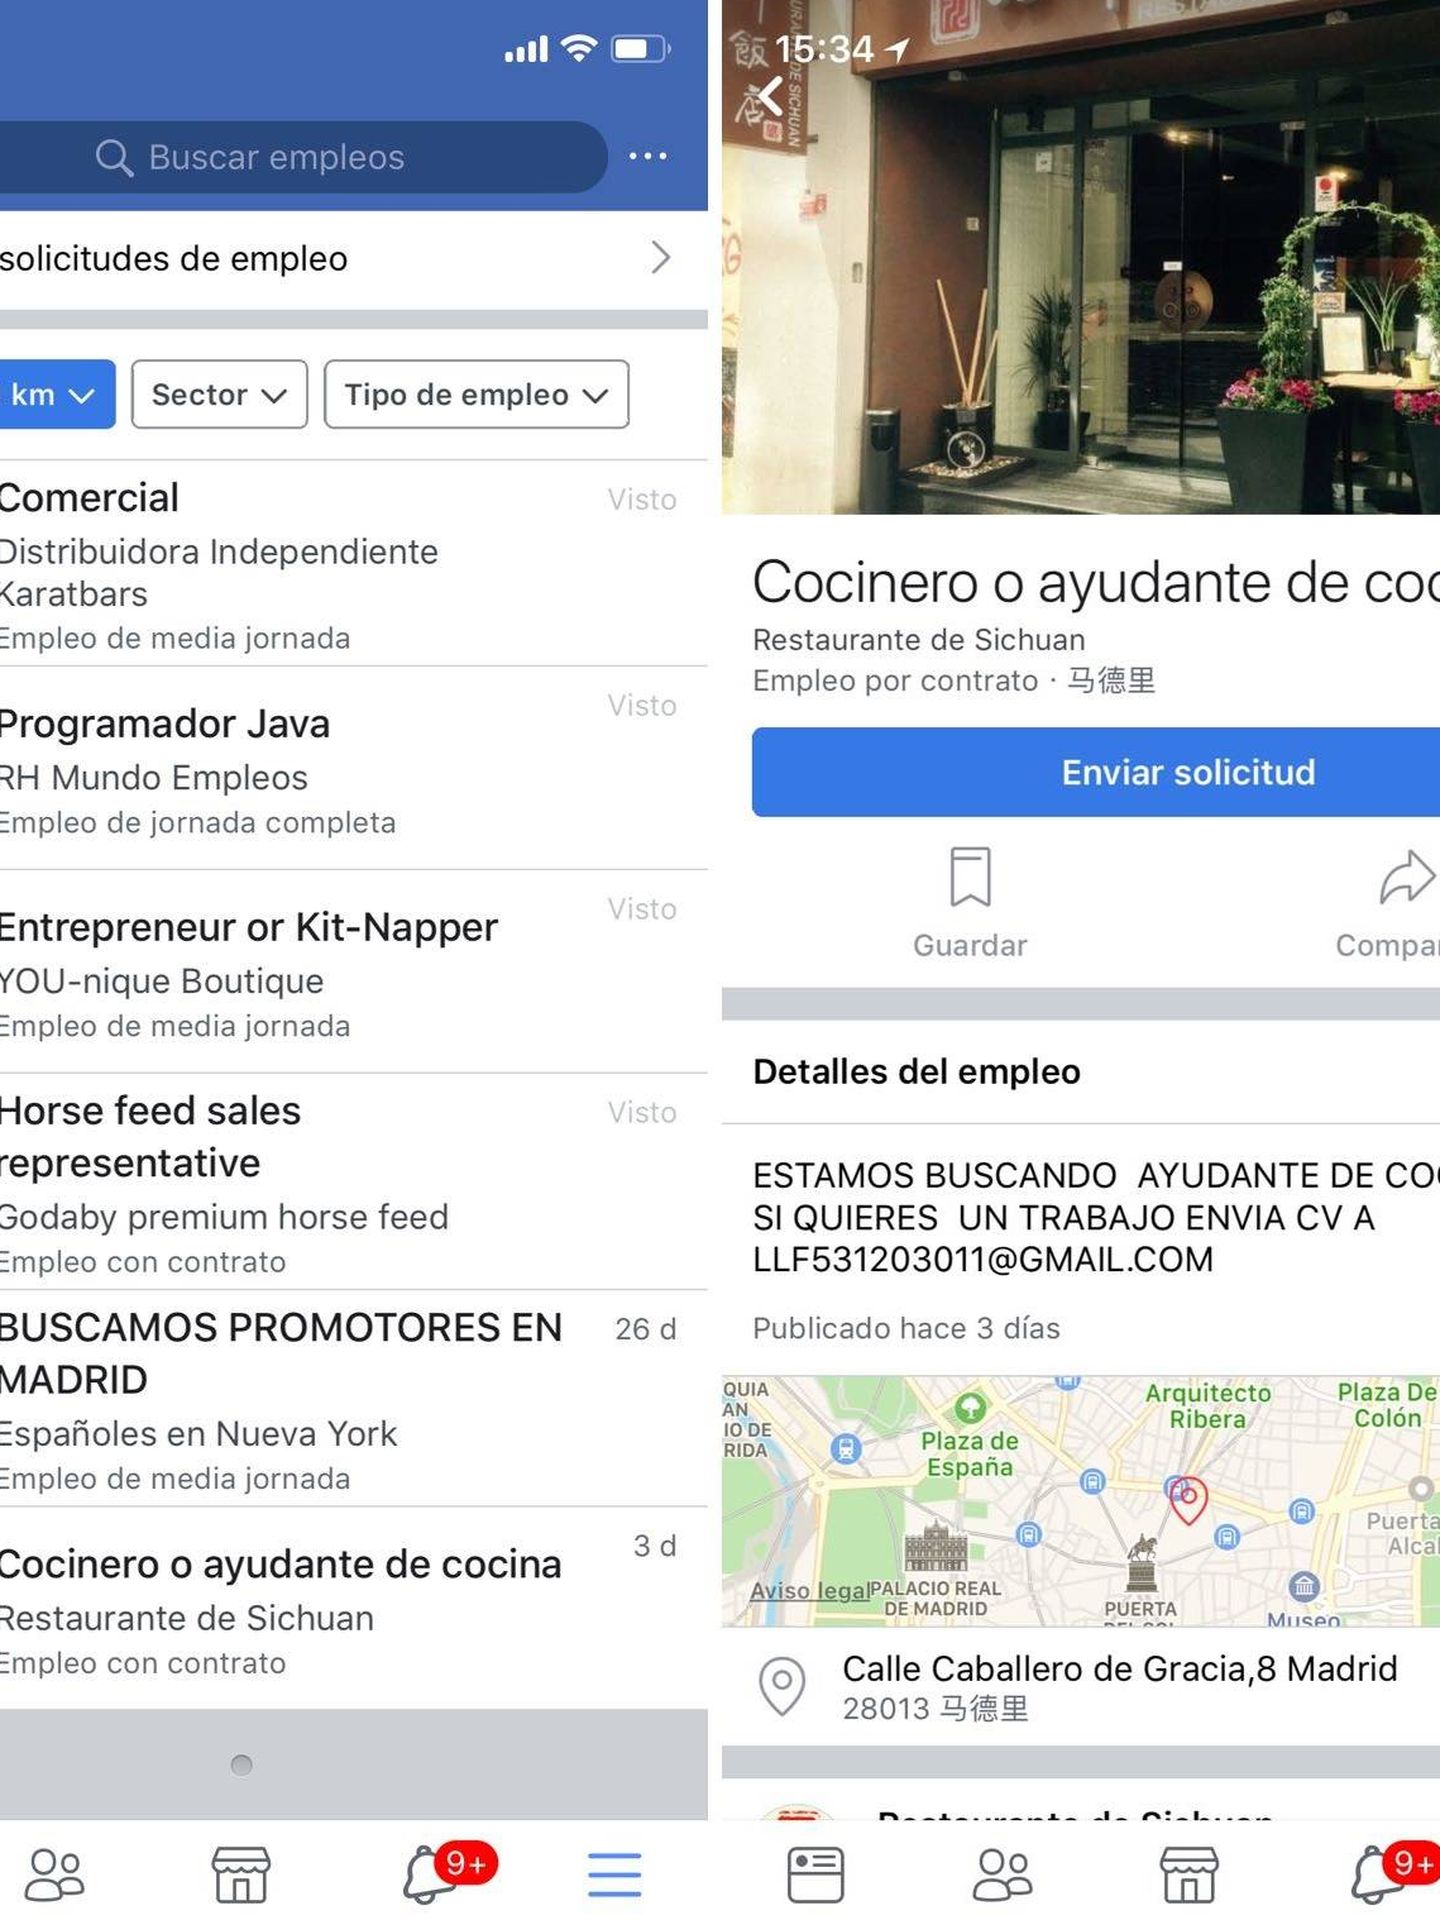 Ofertas de trabajo de Facebook Jobs en Madrid